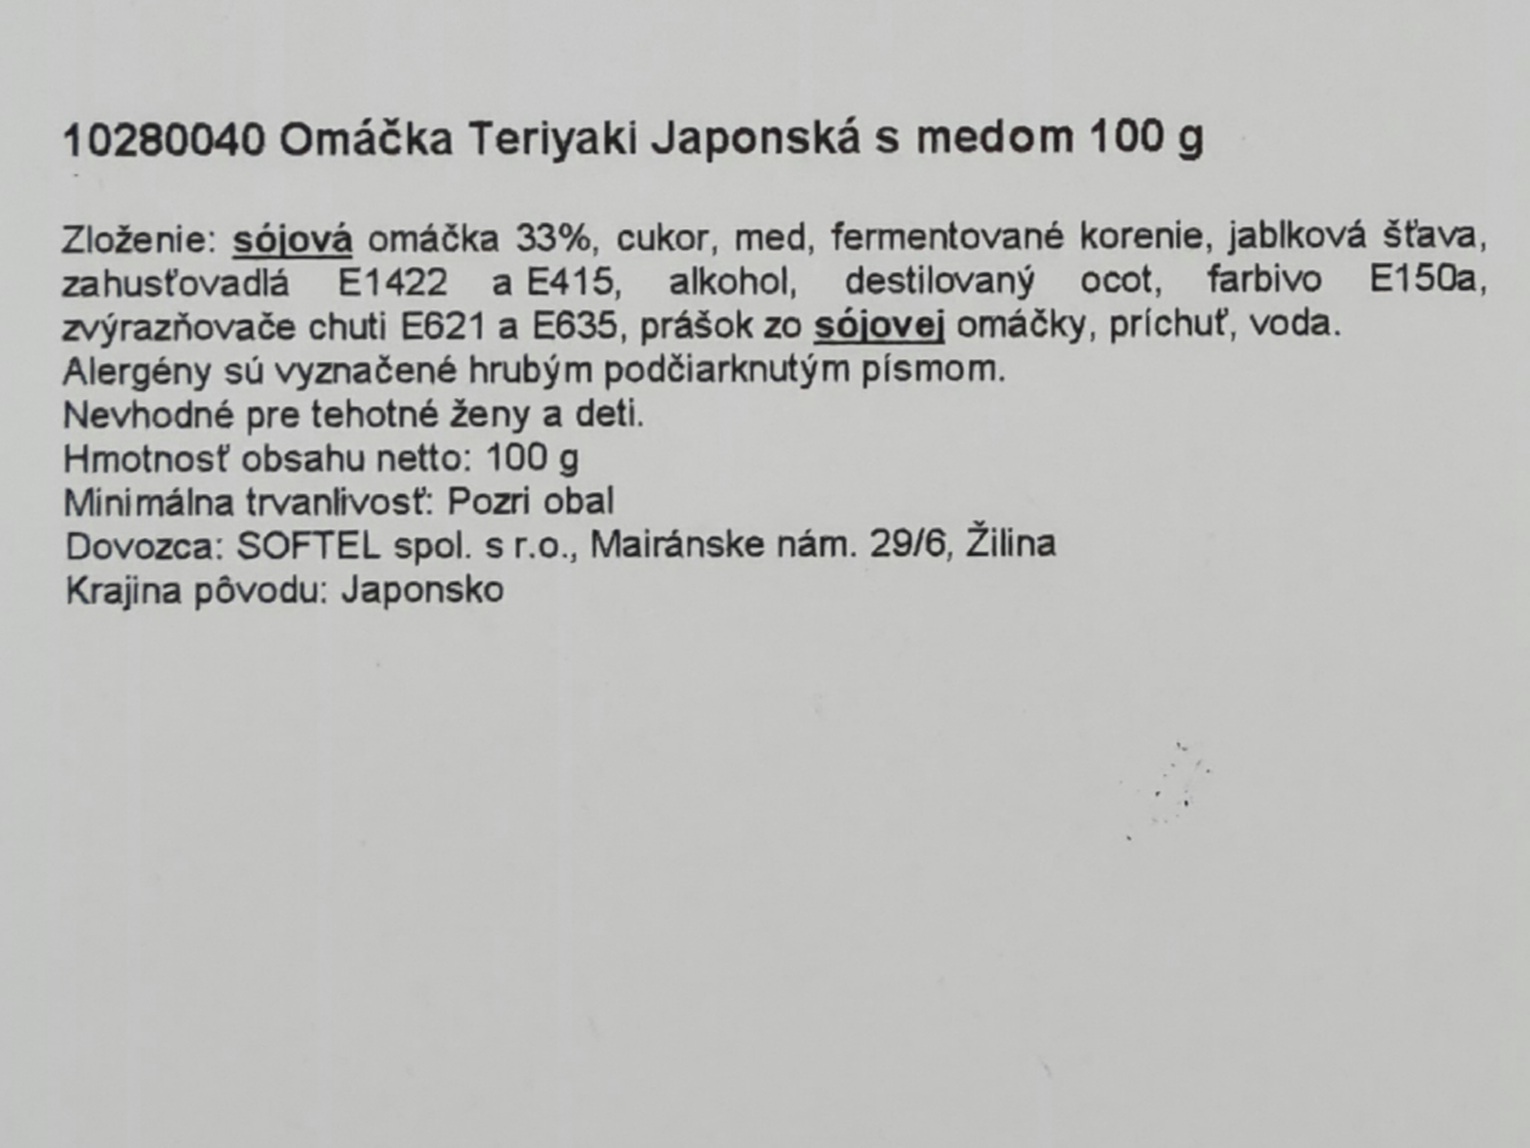 Japonská omáčka Teriyaki s medom 100 g